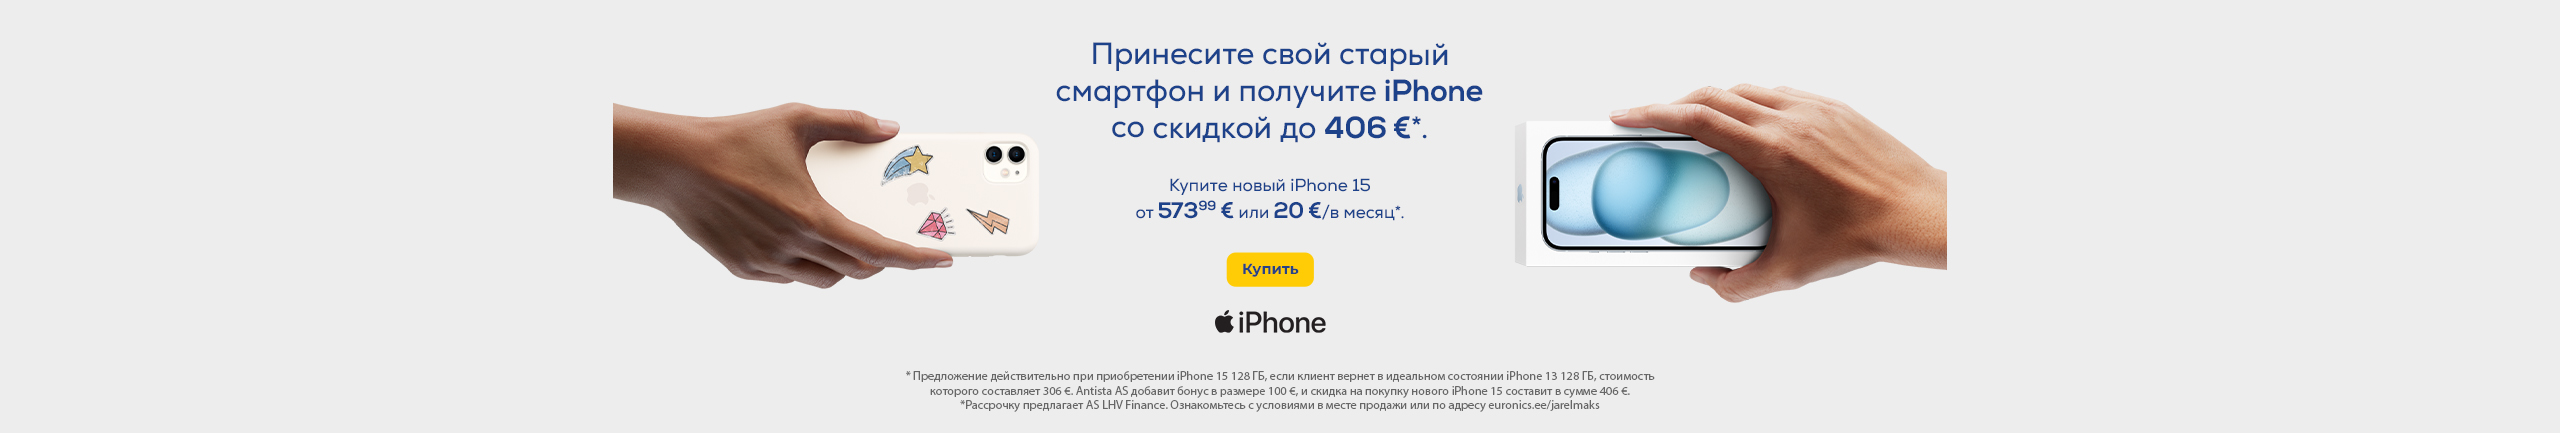 Кампания двойного выкупа Apple iPhone